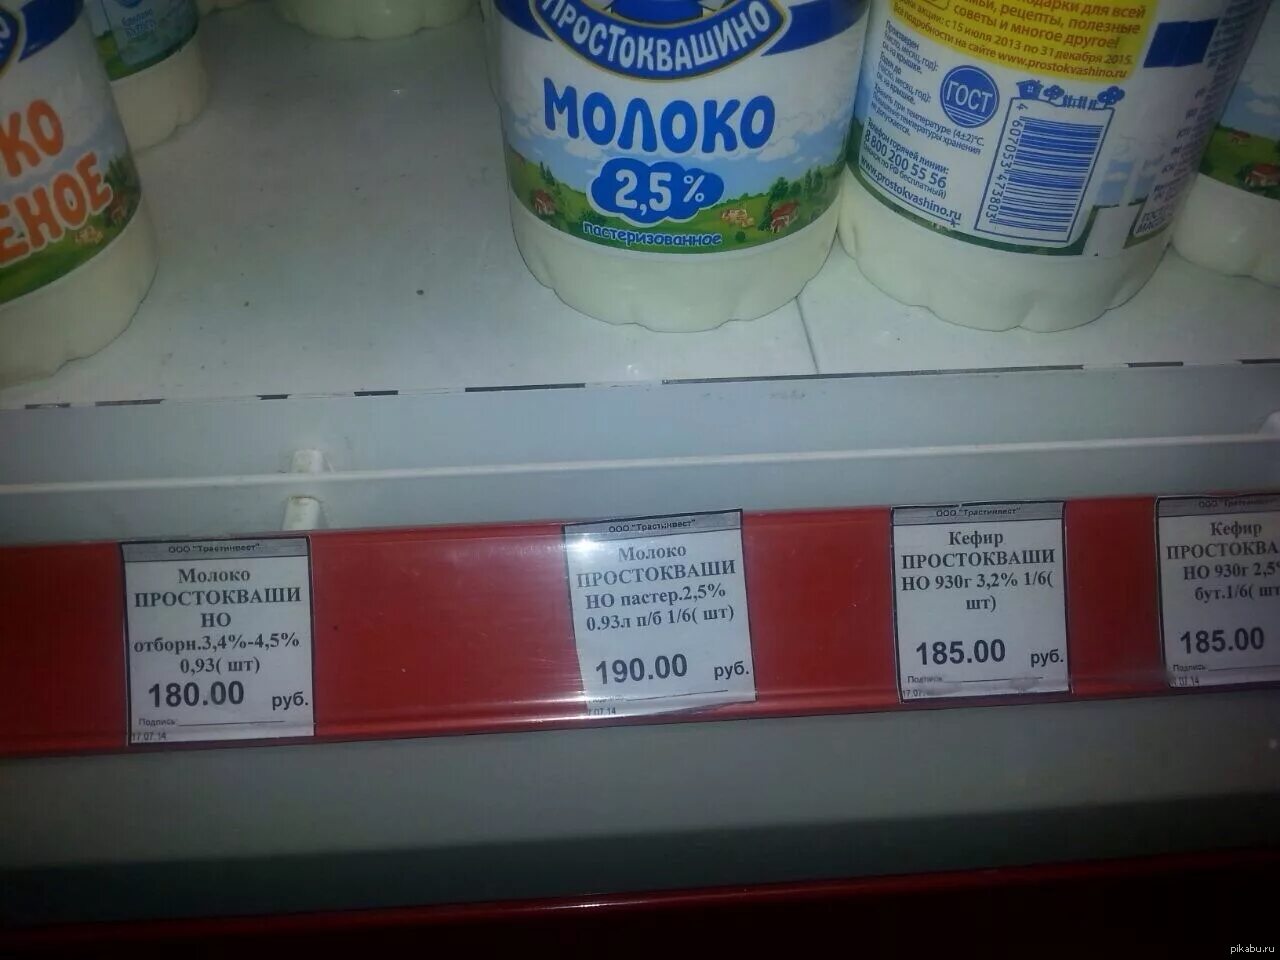 Молока якутия. Ценник на молоко. Ценник на молочные товары. Продукты в магазинах Якутии. Ценник Якутск продукты.